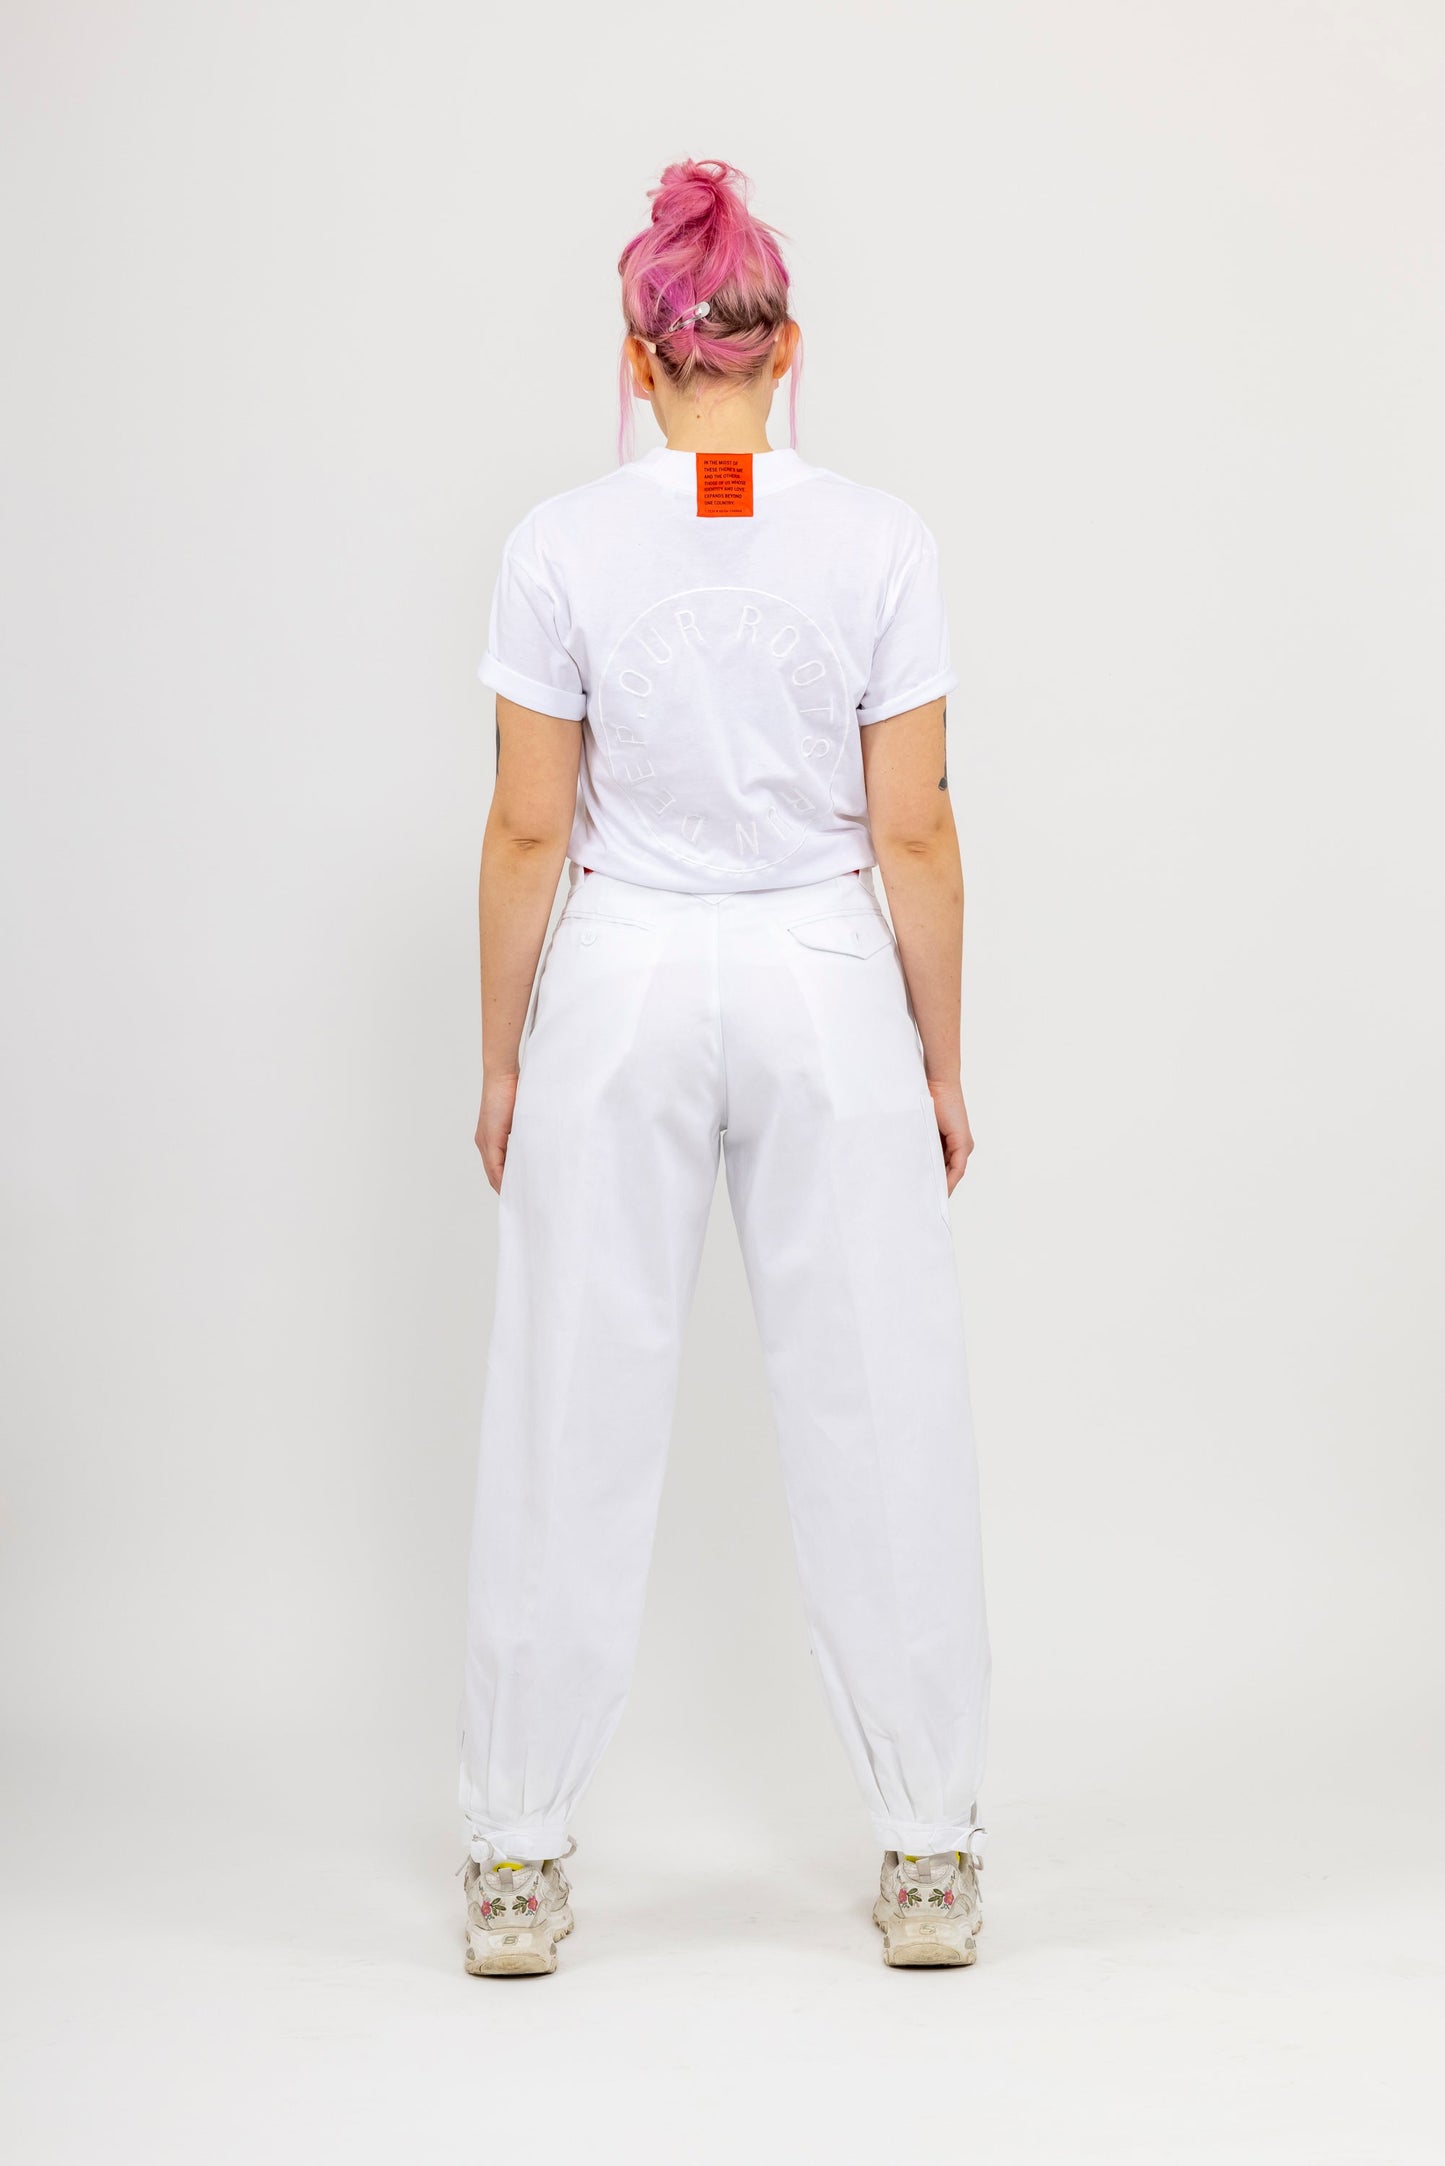 SIGHT Japanese Workwear Pants - White